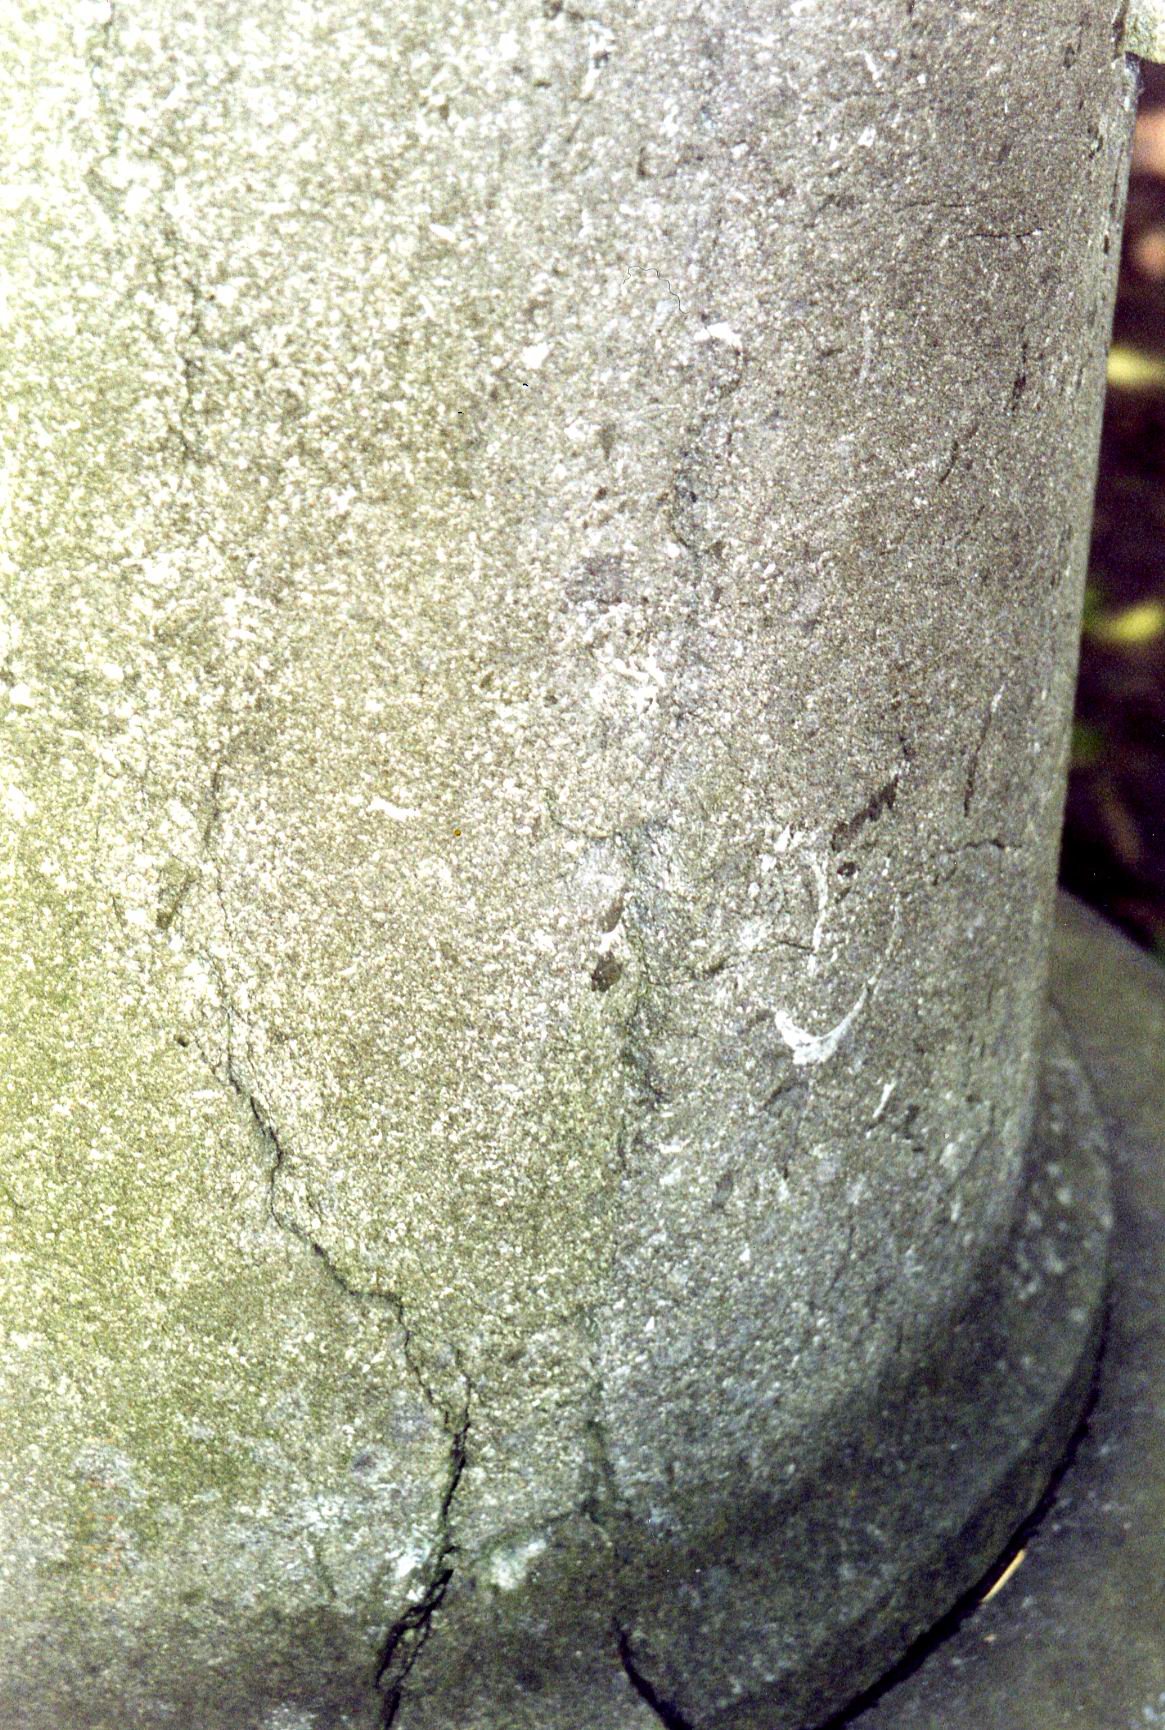 Полуколонна из путиловского известняка. Видны трещины, отшелушивание, налет из атмосферных грязевых отложений и налетов биологического происхождения. Фото ноября 2003 г.
